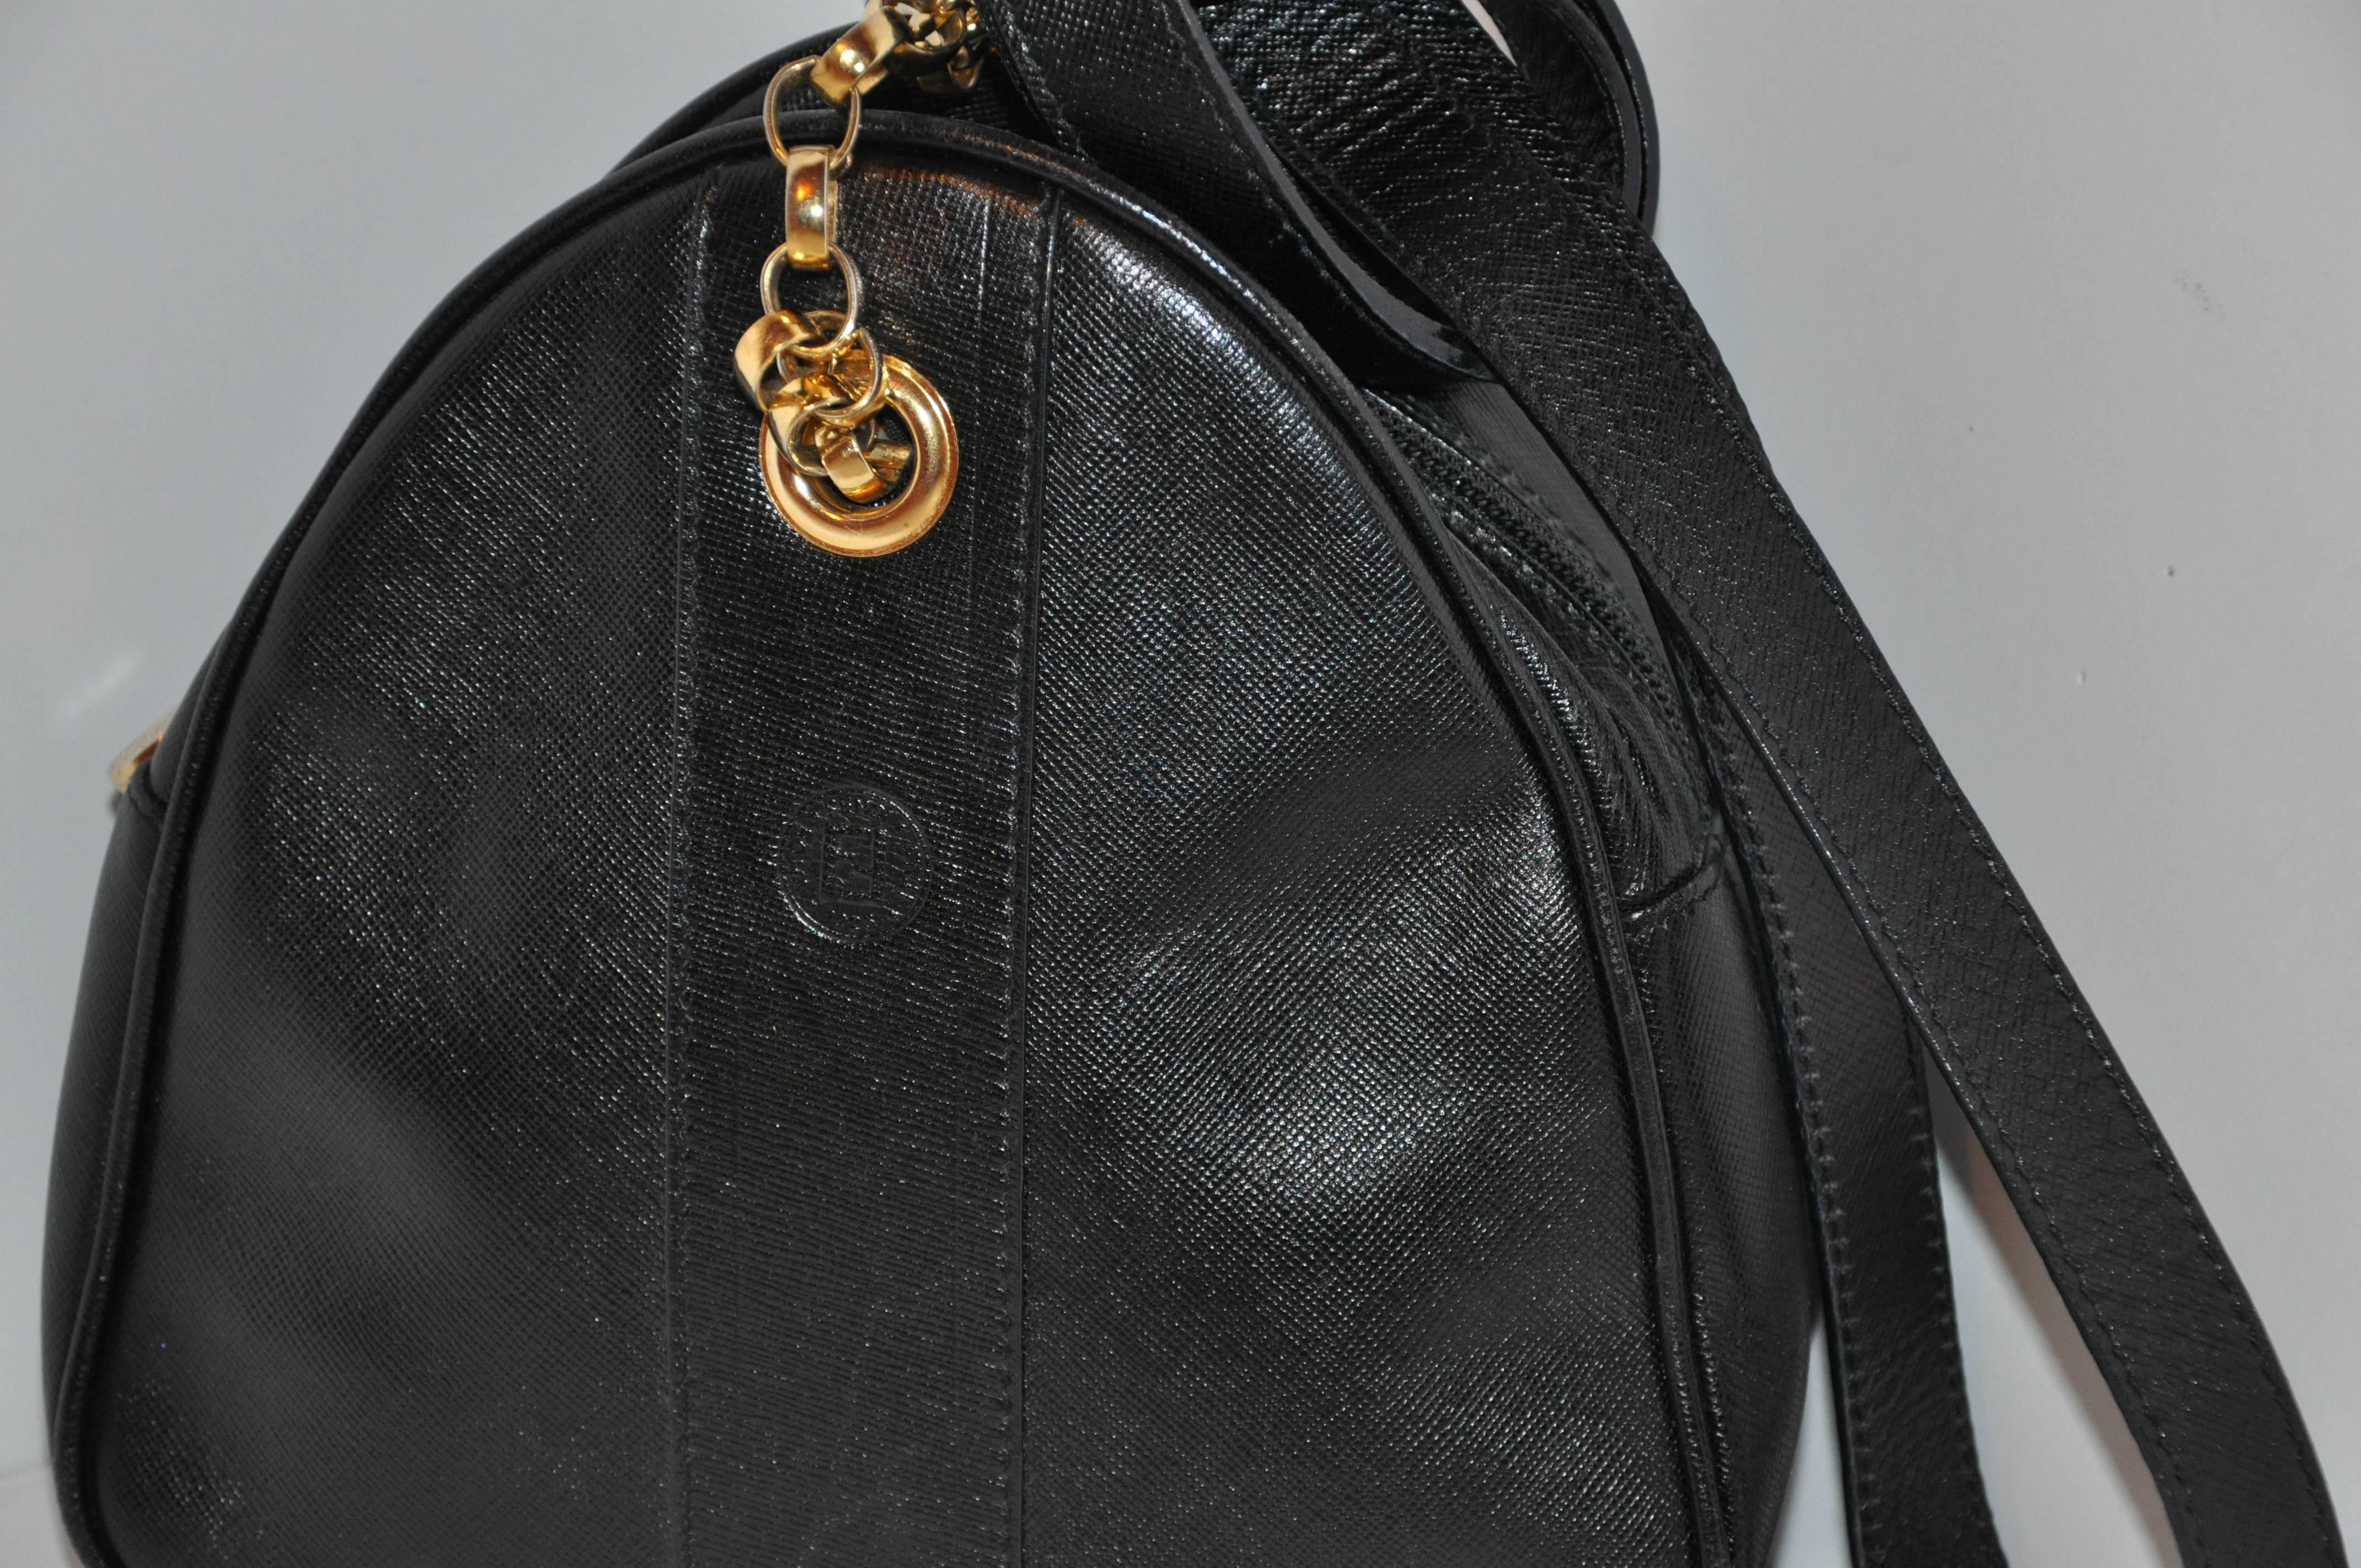         Le petit sac à bandoulière en cuir de veau texturé noir de Fendi est rehaussé de ferrures dorées sur les sangles, l'œillet et la patte de la fermeture éclair. Le logo de la marque est situé sur la face avant.
        L'intérieur est